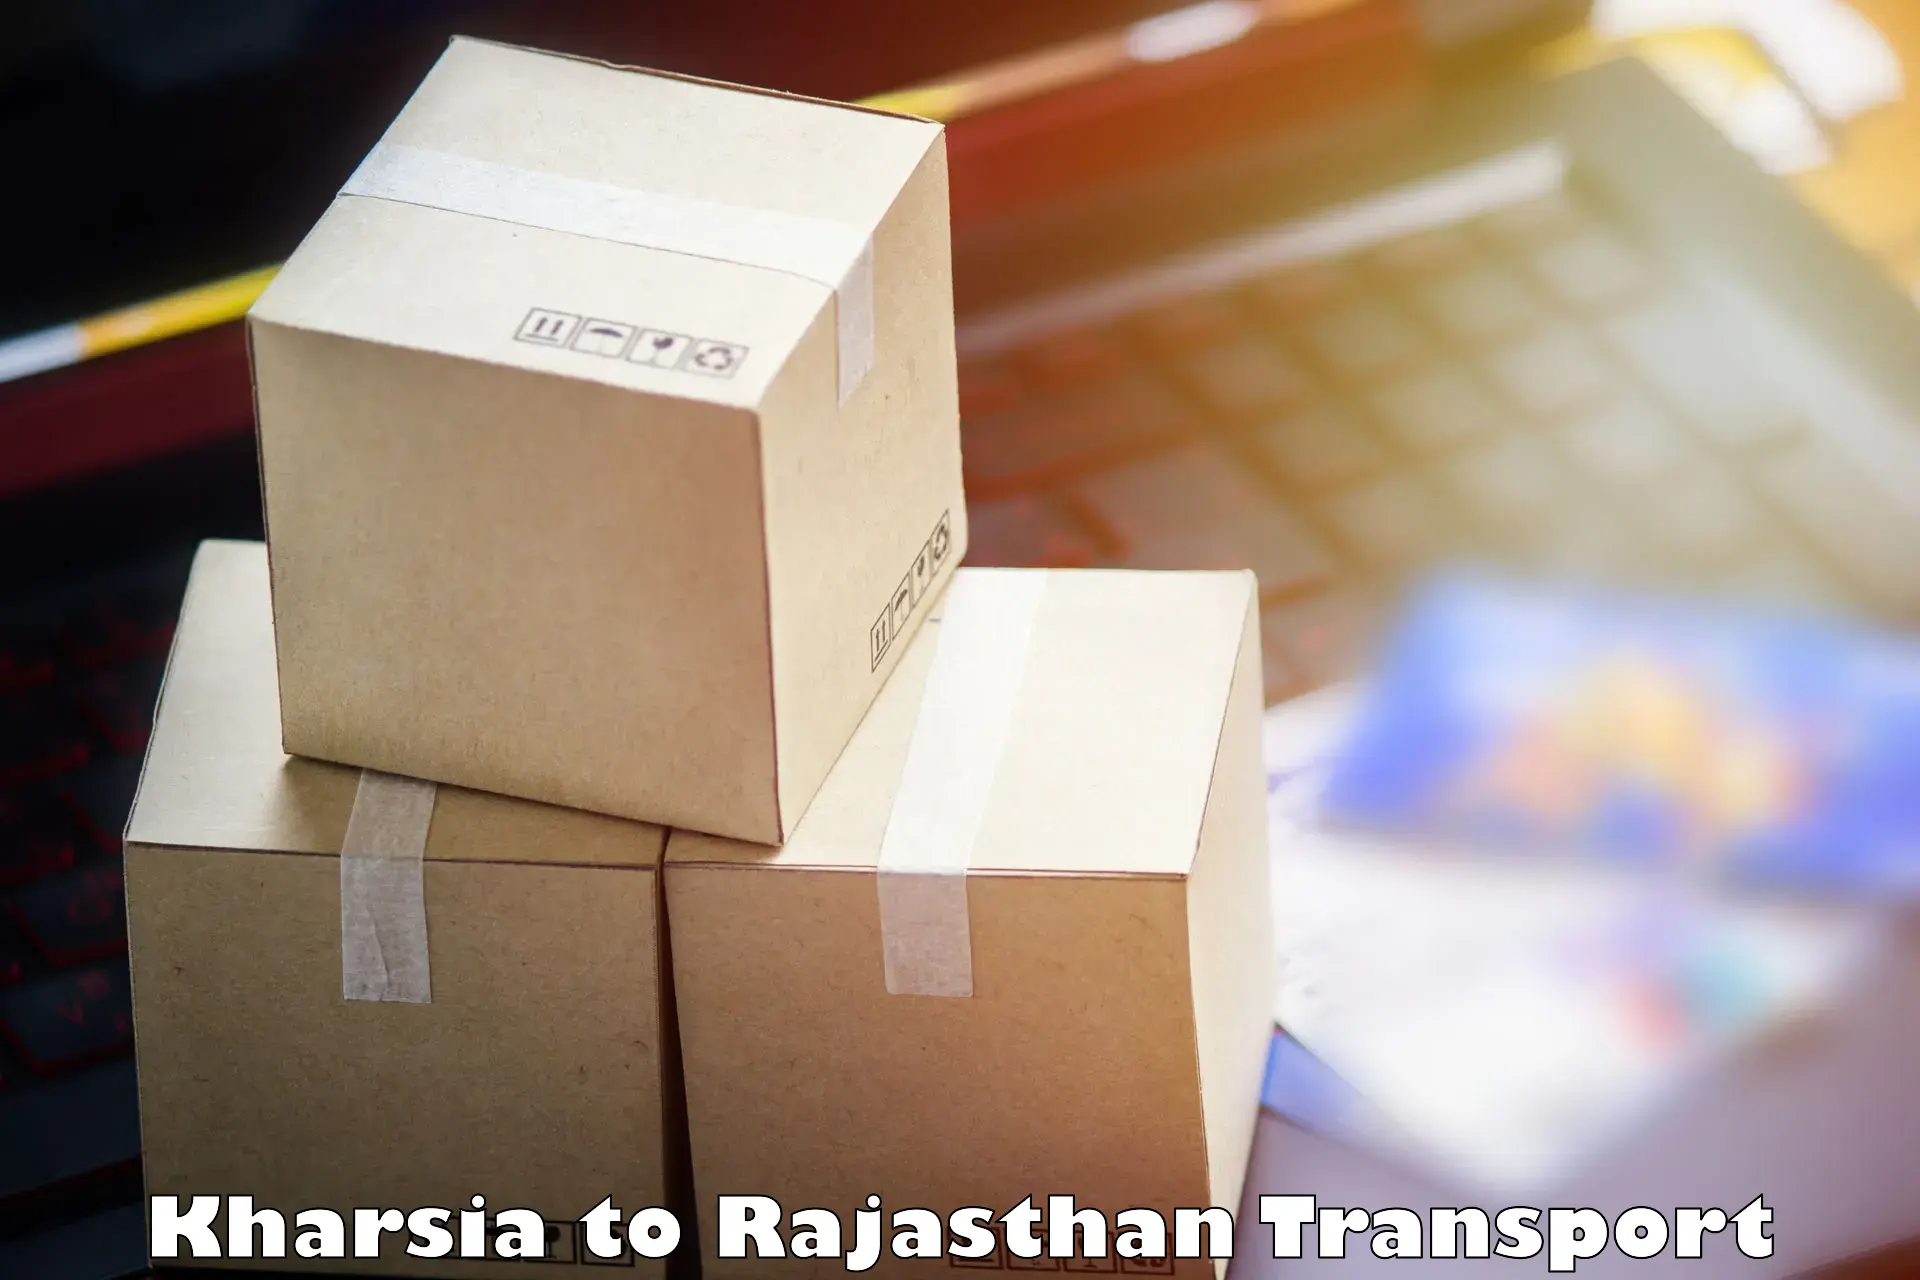 Domestic goods transportation services Kharsia to Bikaner